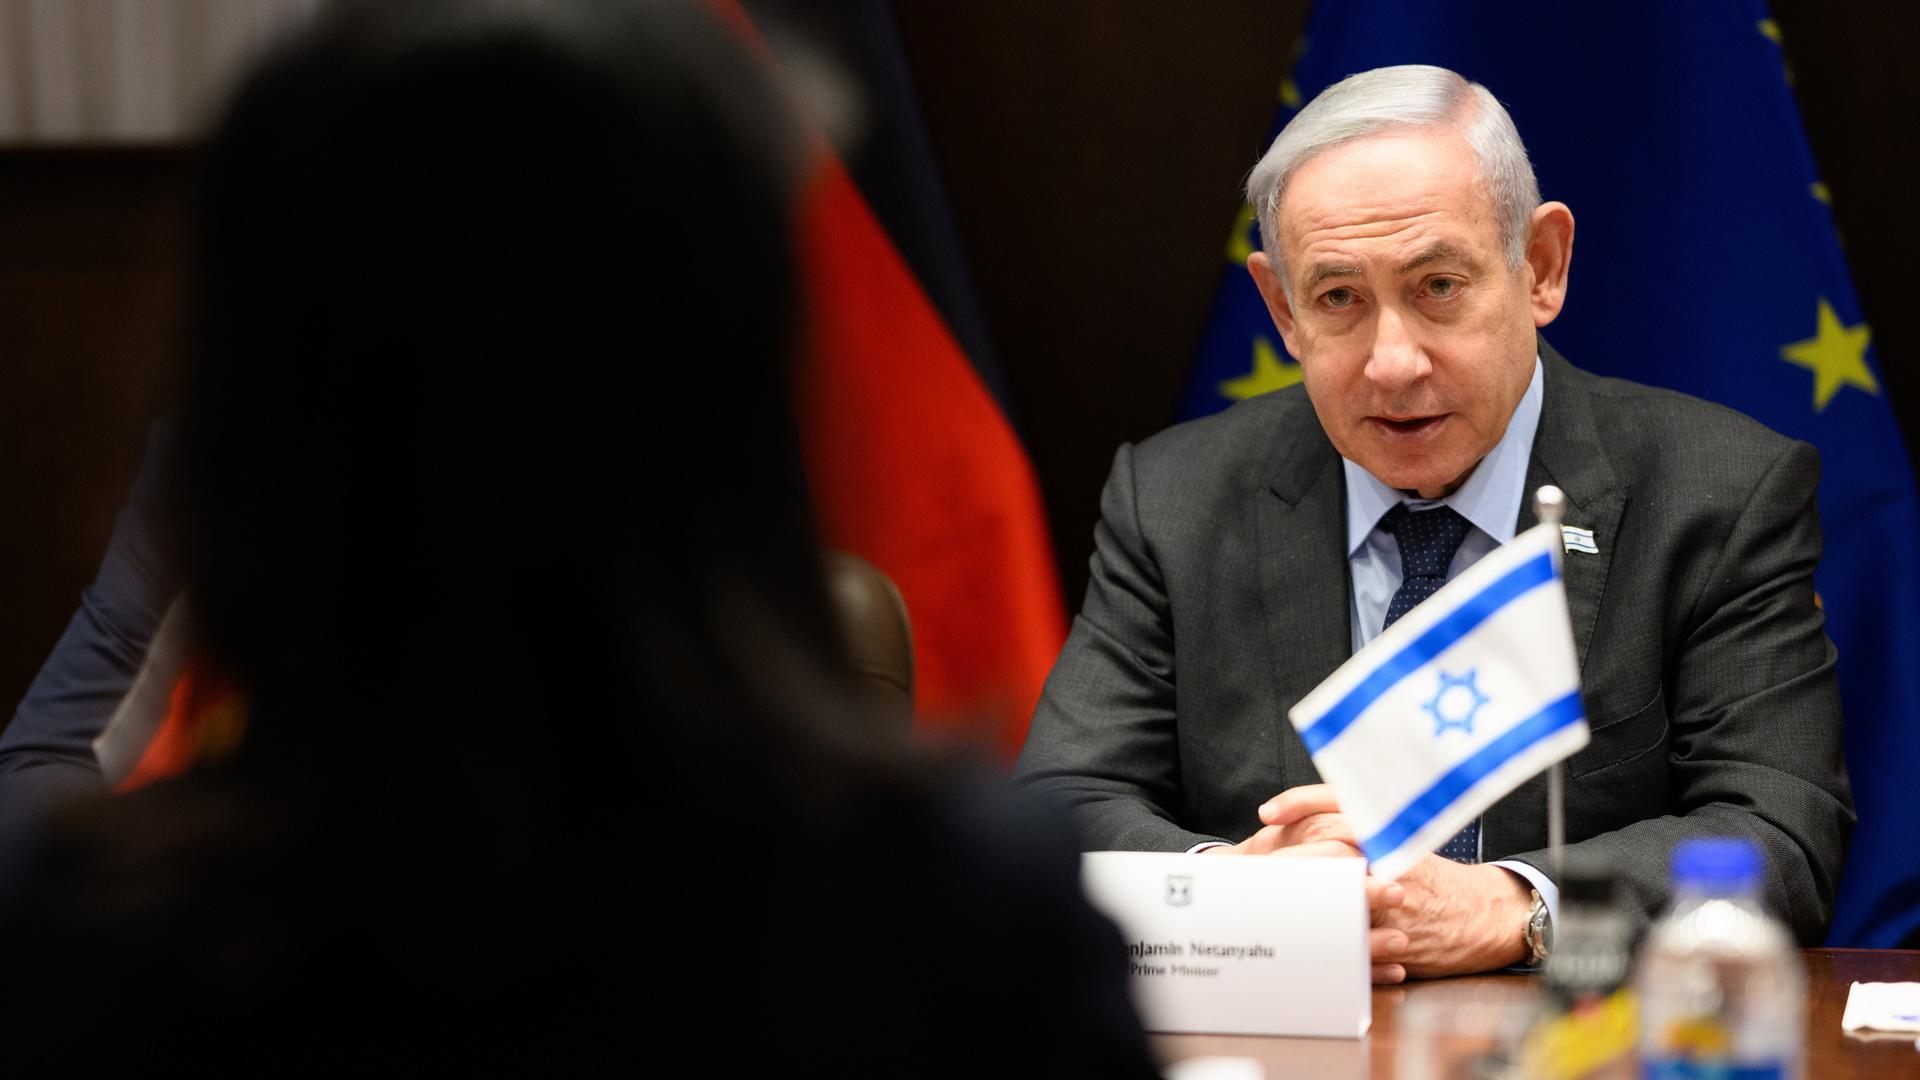 Benjamin Netanjahu, Ministerpräsident von Israel, sitzt an einem Tisch und hört zu, im Vordergrund sieht an den Schatten einer Person, die ihm gegenübersitzt.